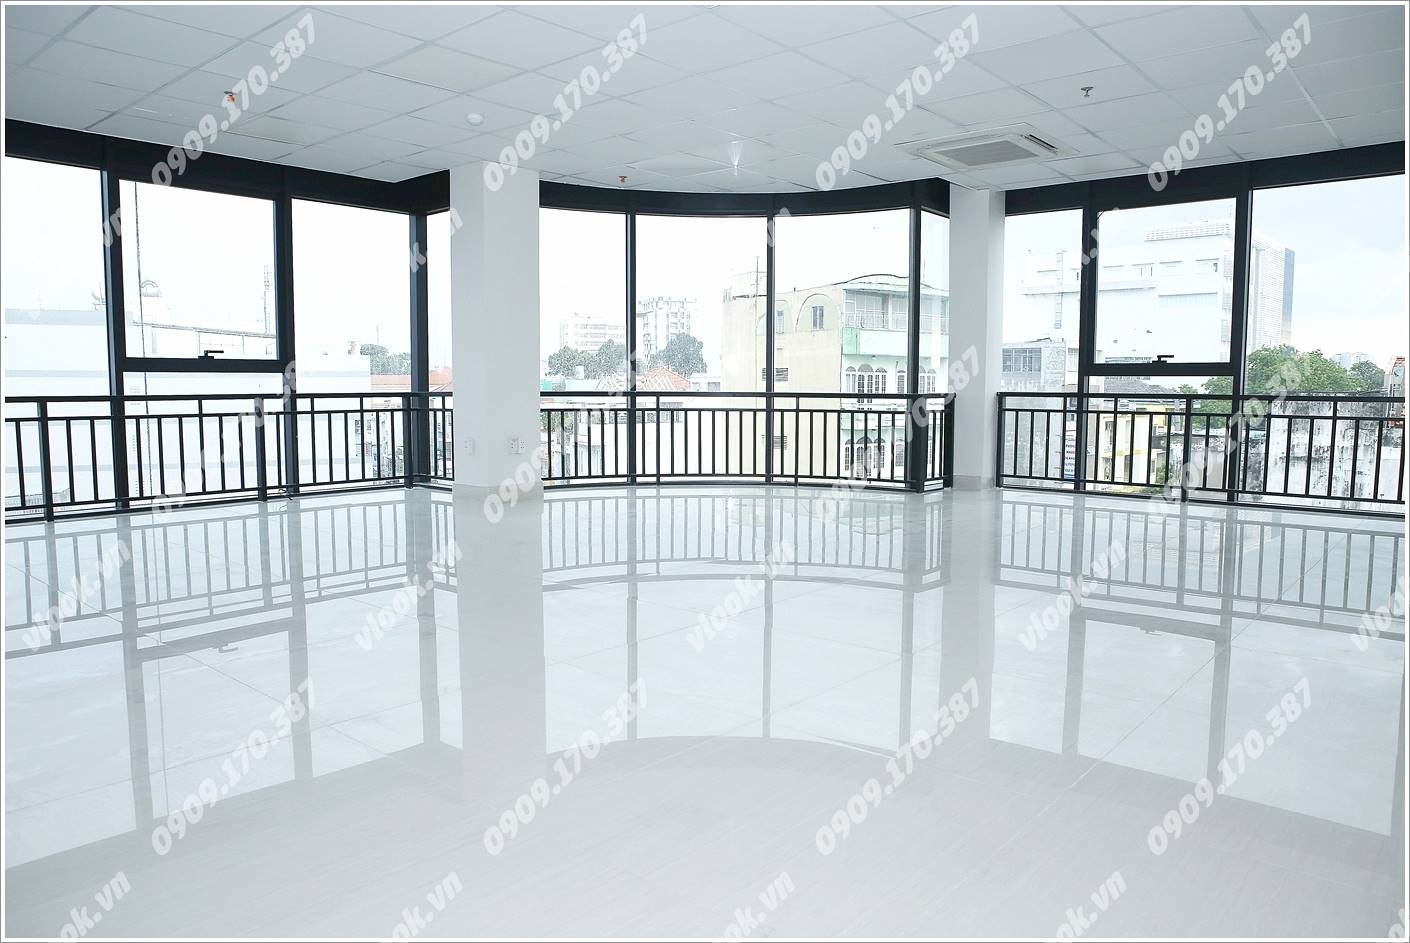 Cao ốc cho thuê văn phòng MHPC Building, Nguyễn Huy Lượng, Quận Bình Thạnh, TPHCM - vlook.vn